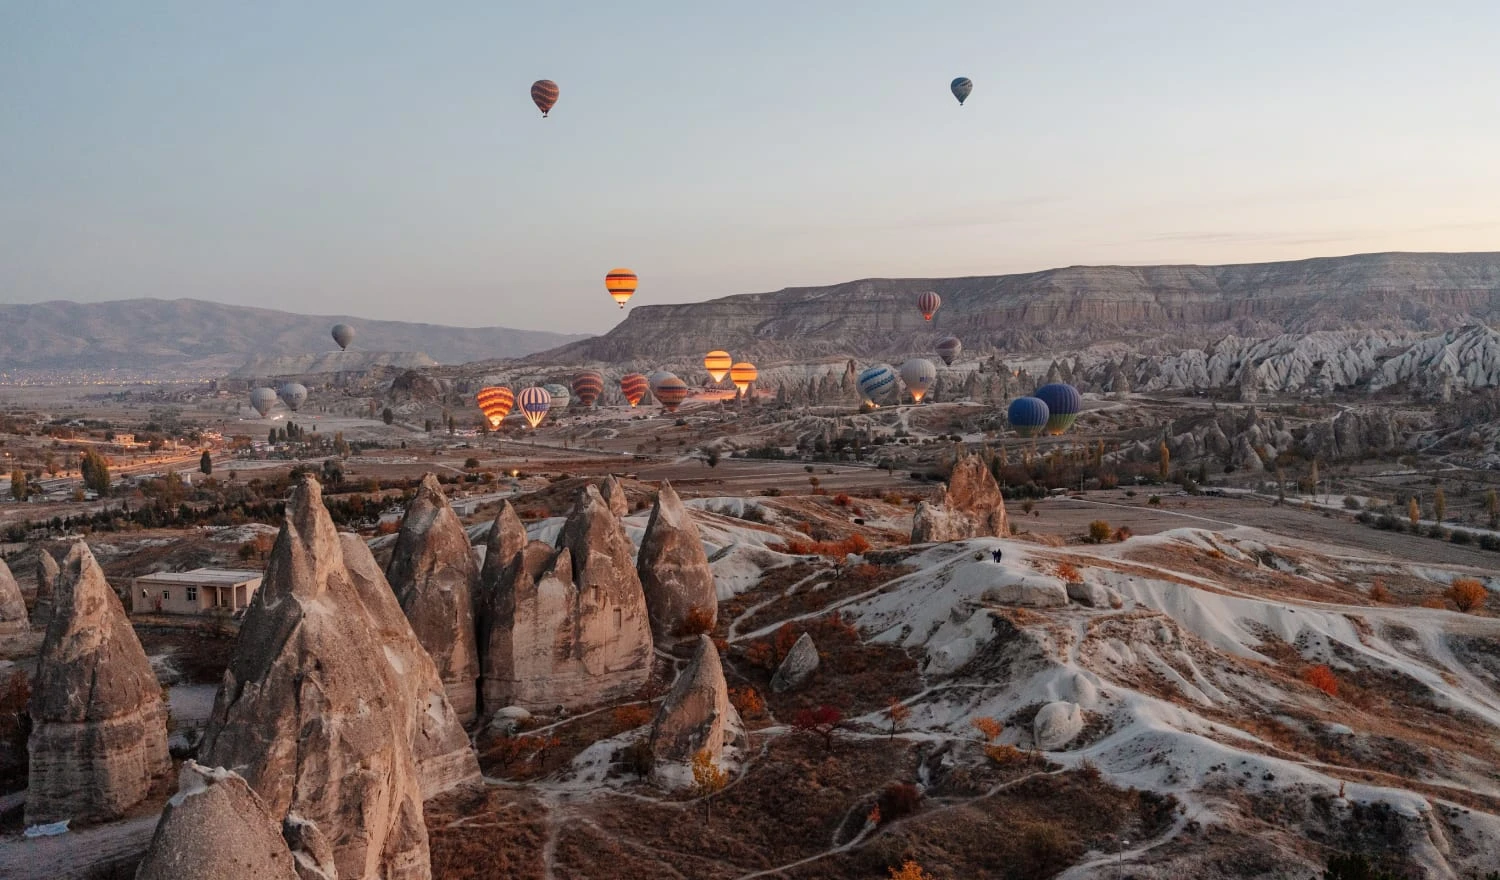 Hot air ballooning over Cappadocia, Turkey